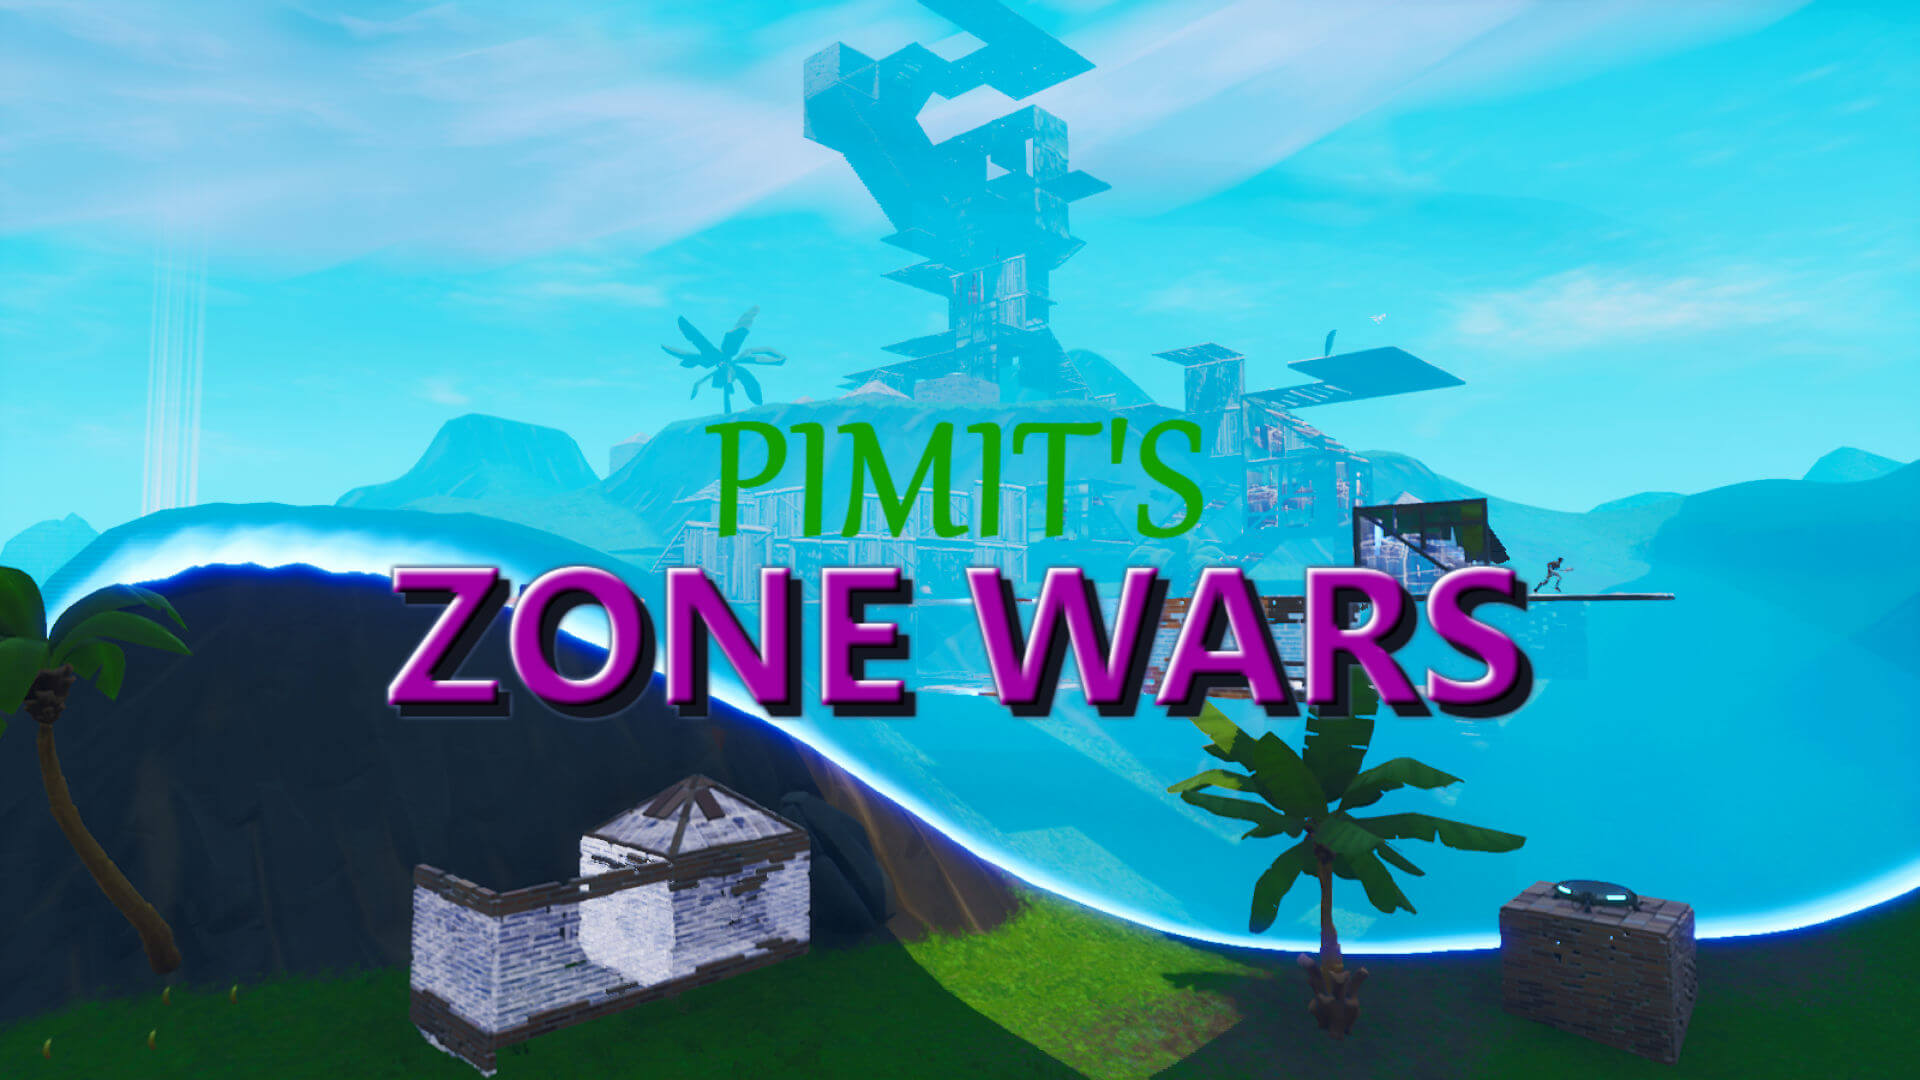 2v2 desert zone wars code